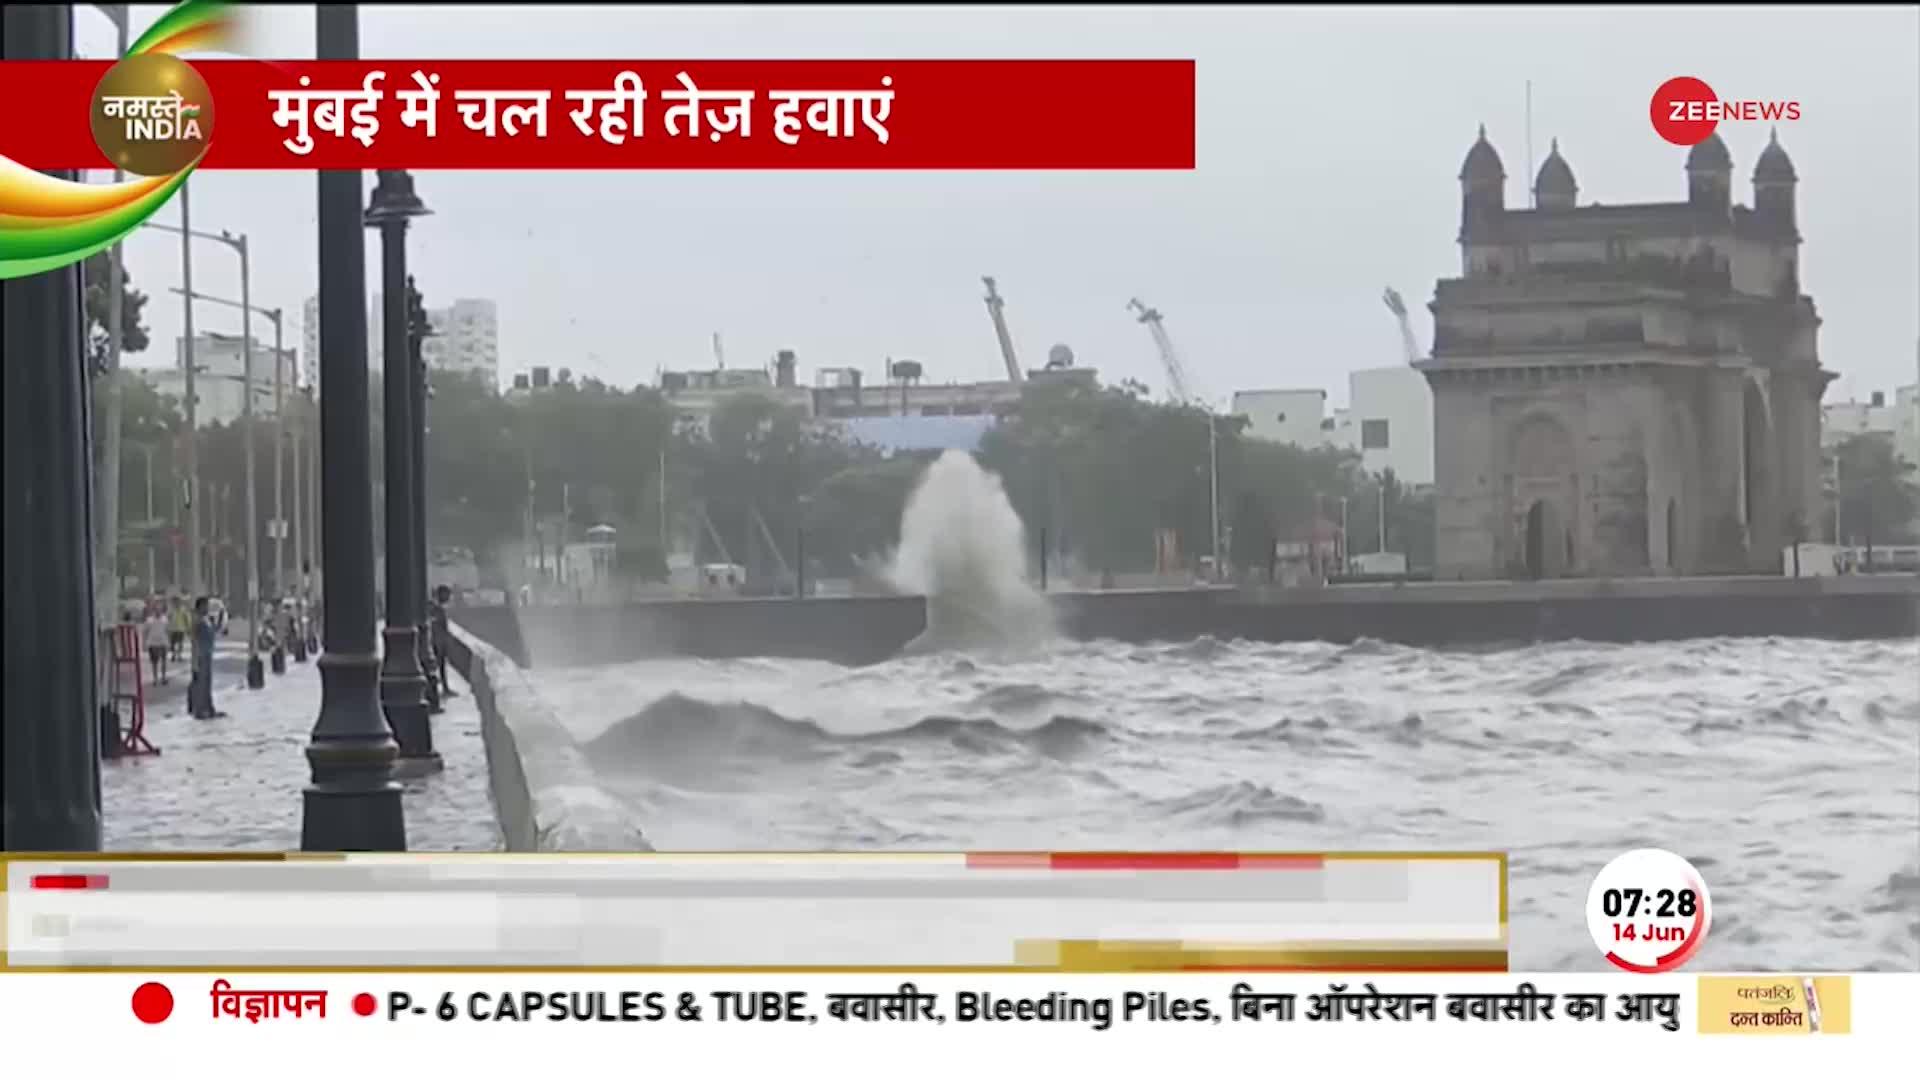 Cyclone Biparjoy: तूफान बिपरजॉय का असर, Gateway of India के पास ऊंची लहरों के साथ तेज हवाएं